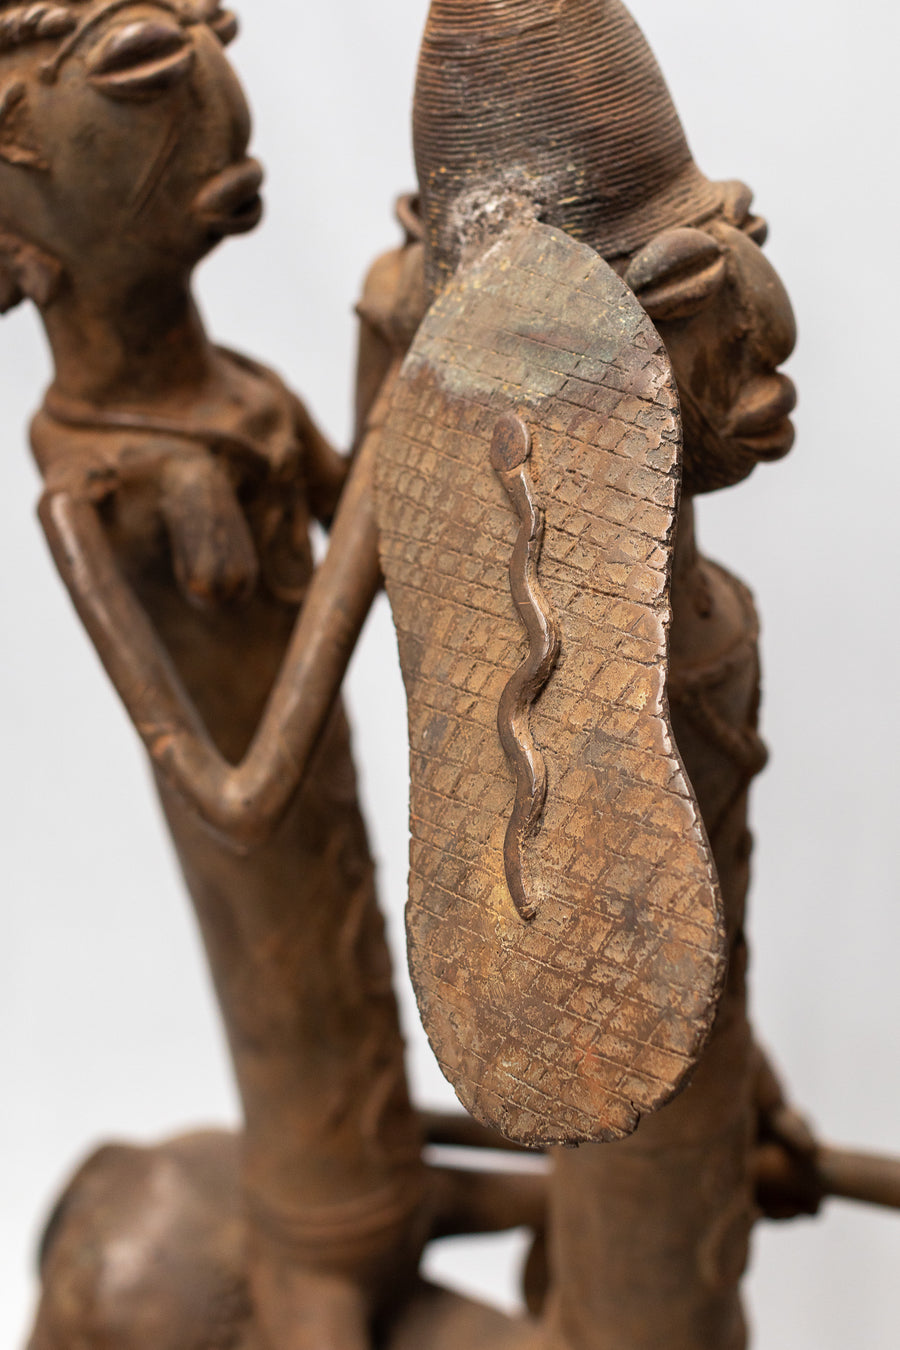 Caballo con 3 guerreros Maroua - País: Camerún  Material: Aleación de bronce  Medidas: 108X25X121cm